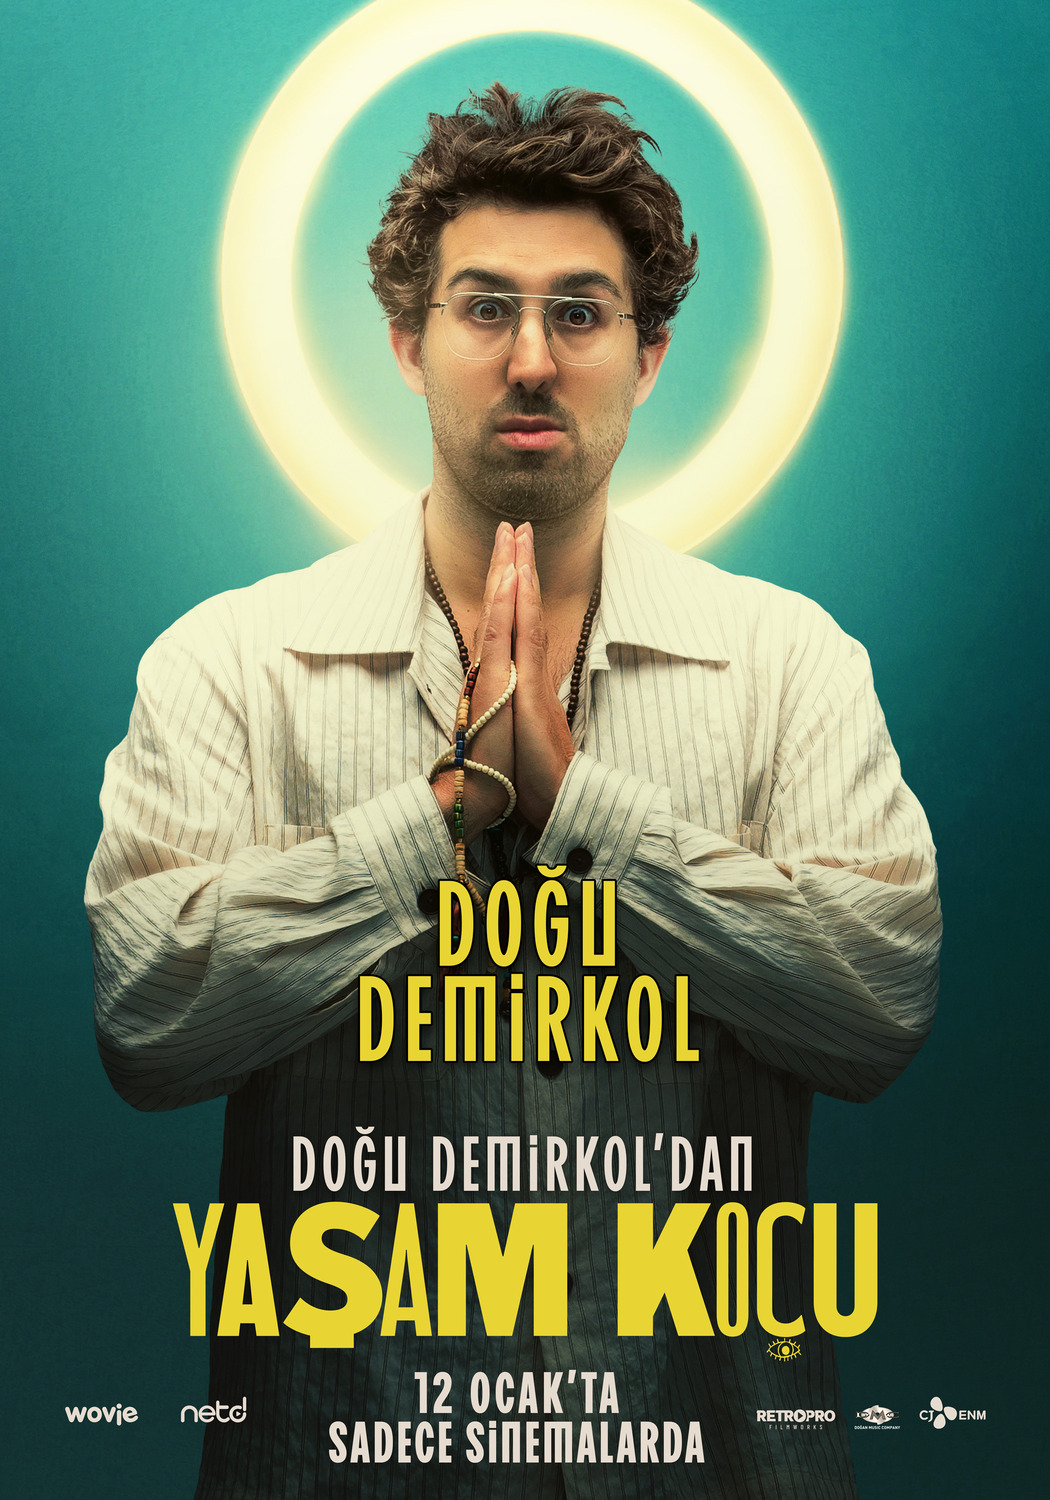 Extra Large Movie Poster Image for Yasam Koçu (#3 of 5)